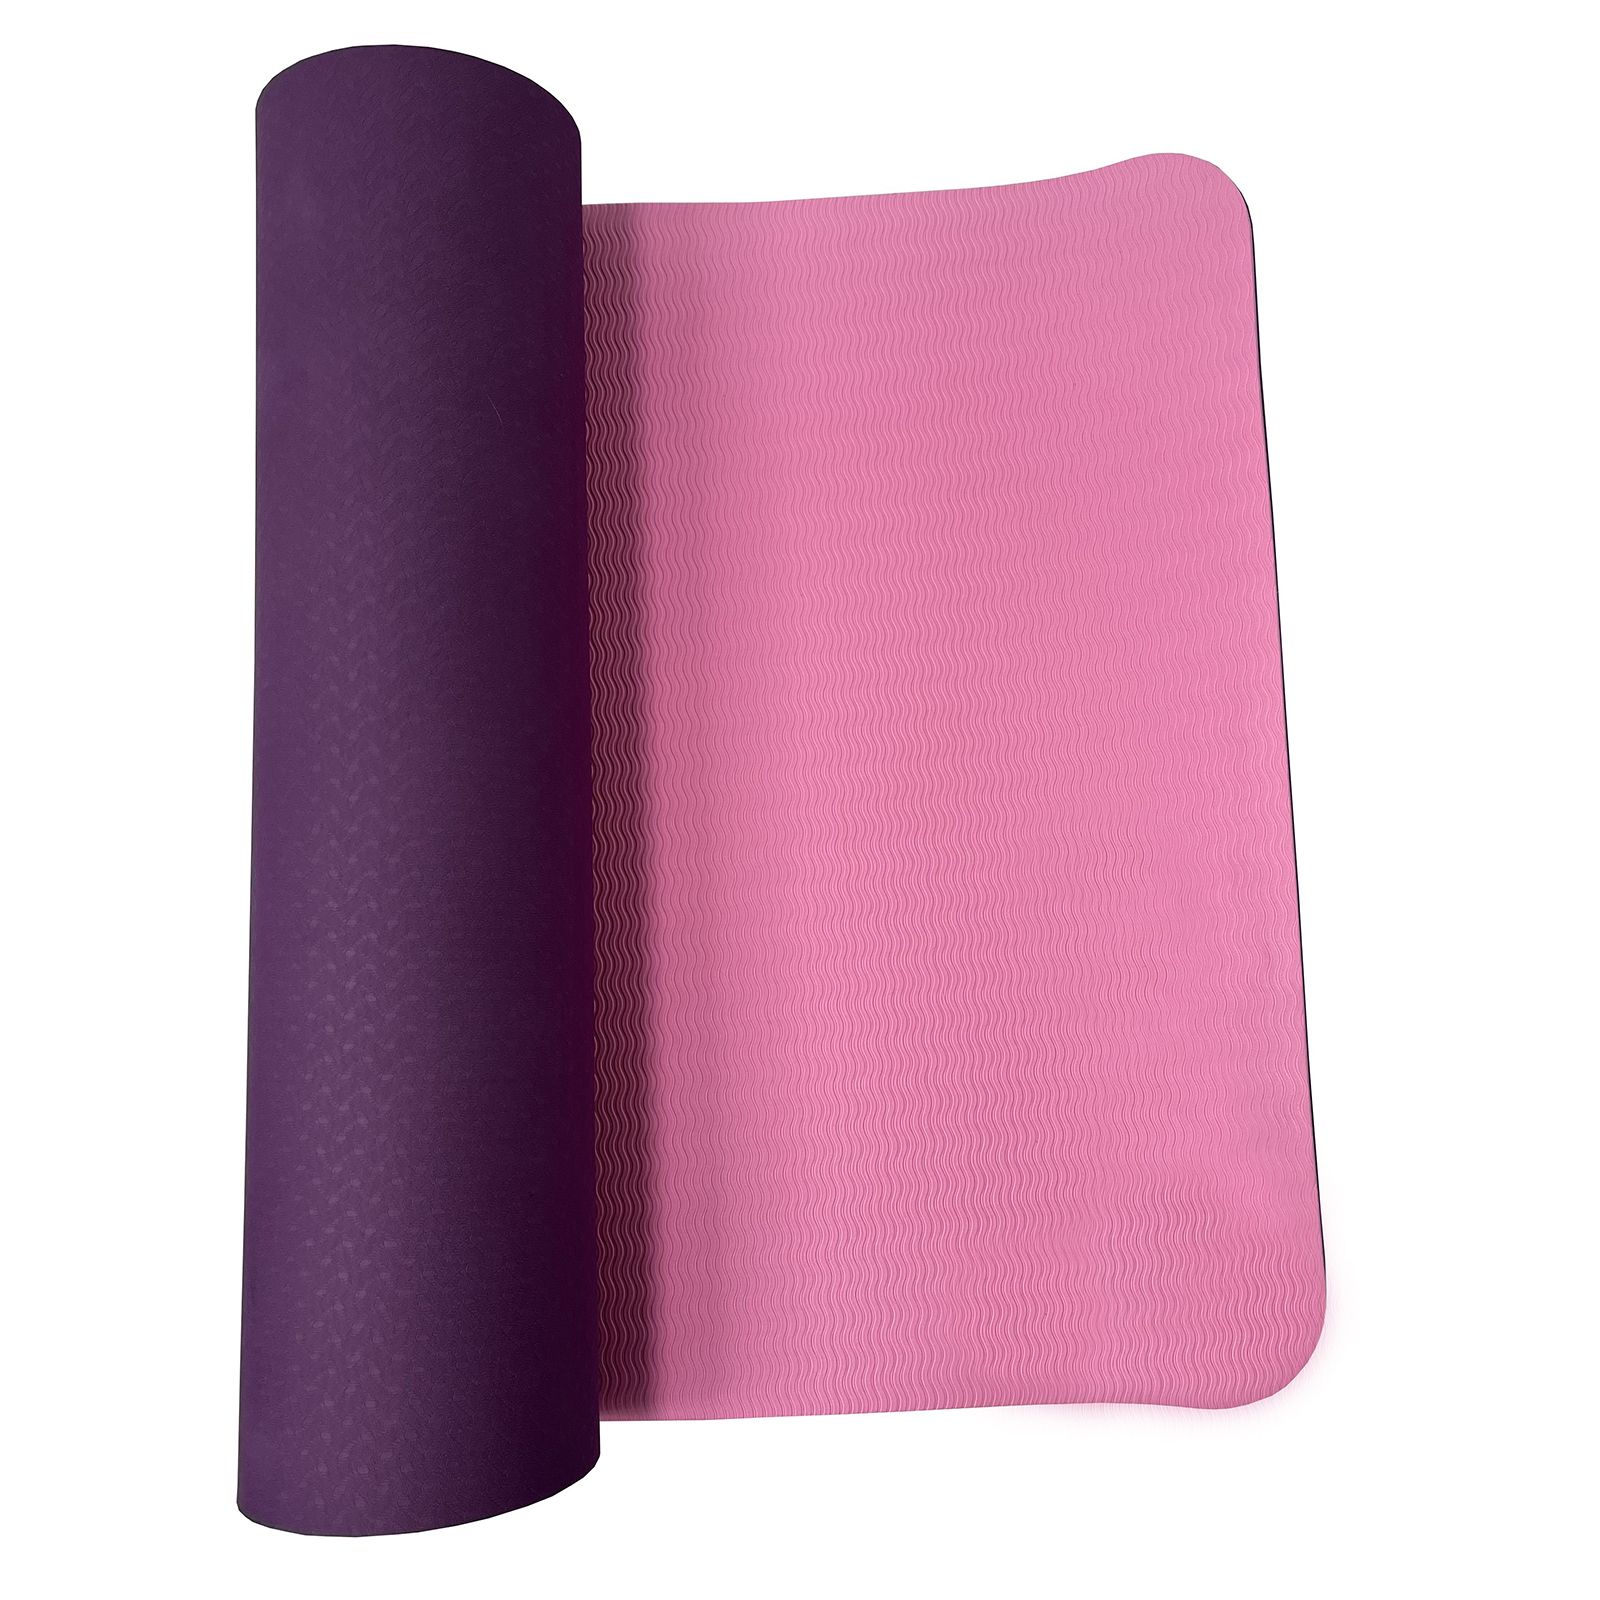 Коврик для йоги и фитнеса UNIX Fit двусторонний, 180 х 61 х 0,8 см, двуцветный, фиолетовый